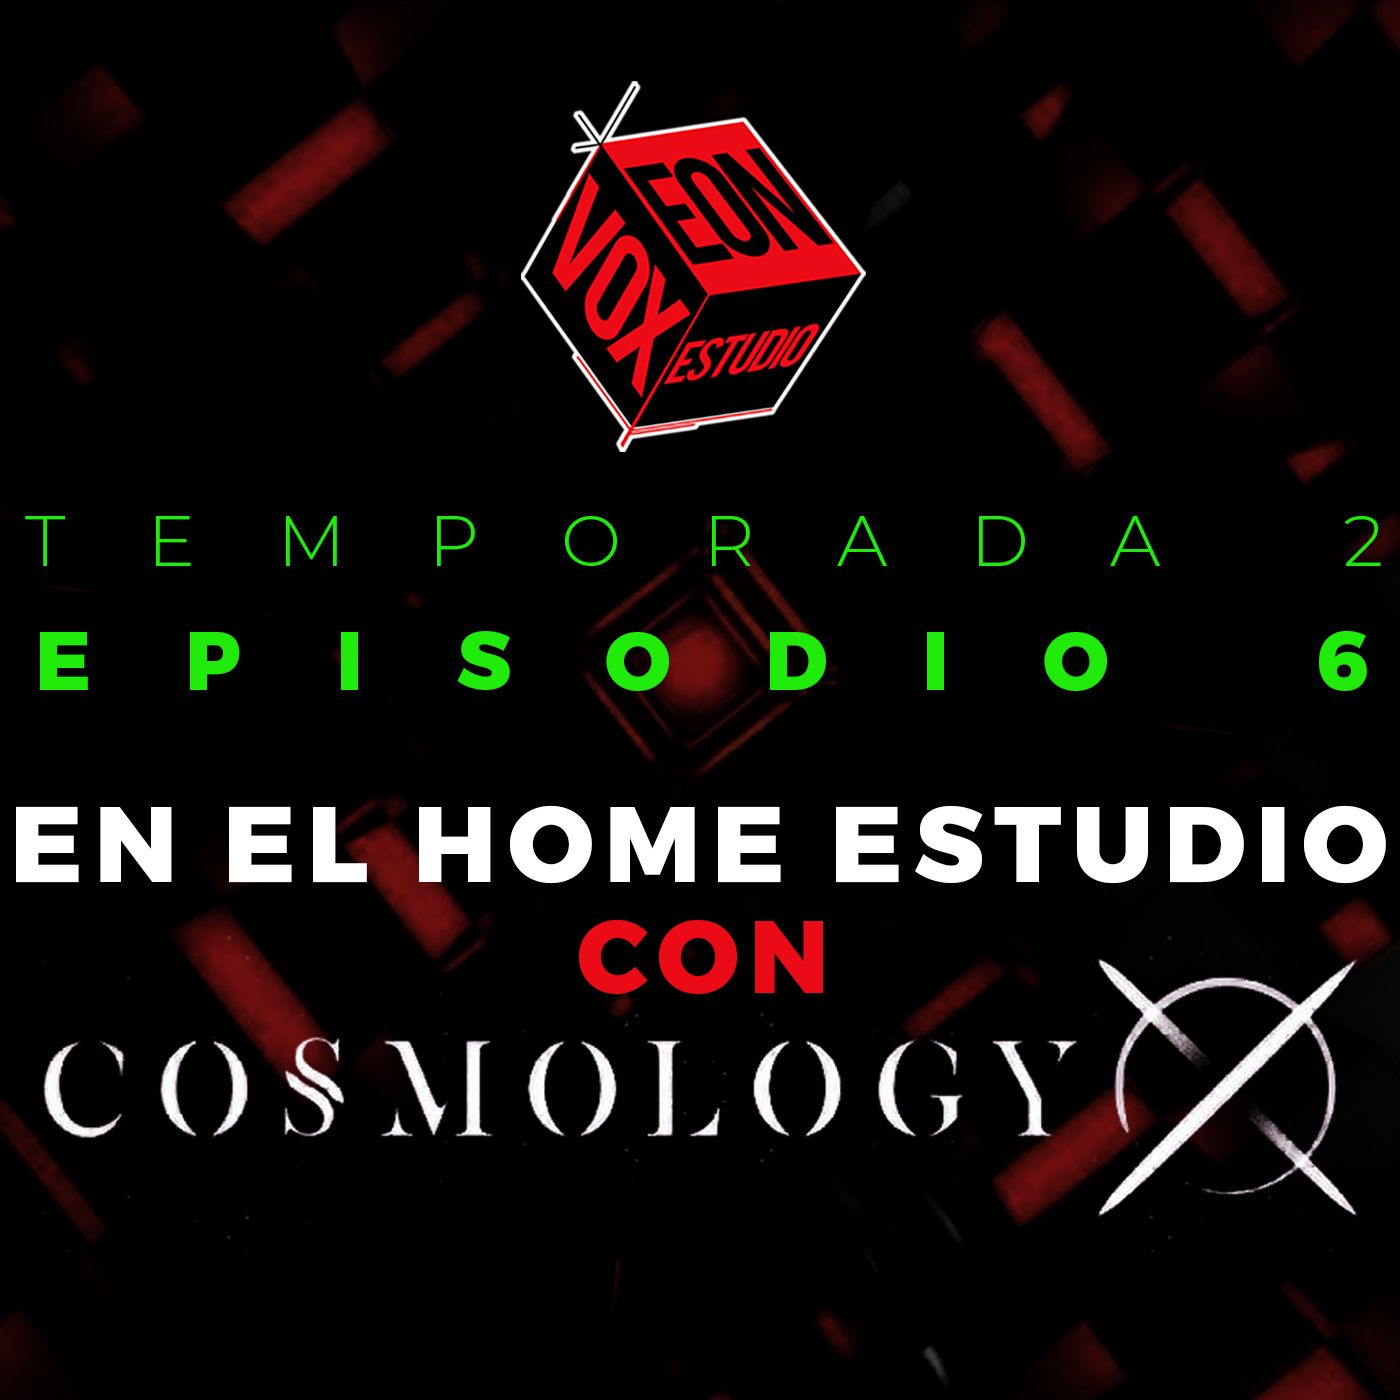 Eon Vox Estudio - En el Home Estudio con Cosmology X